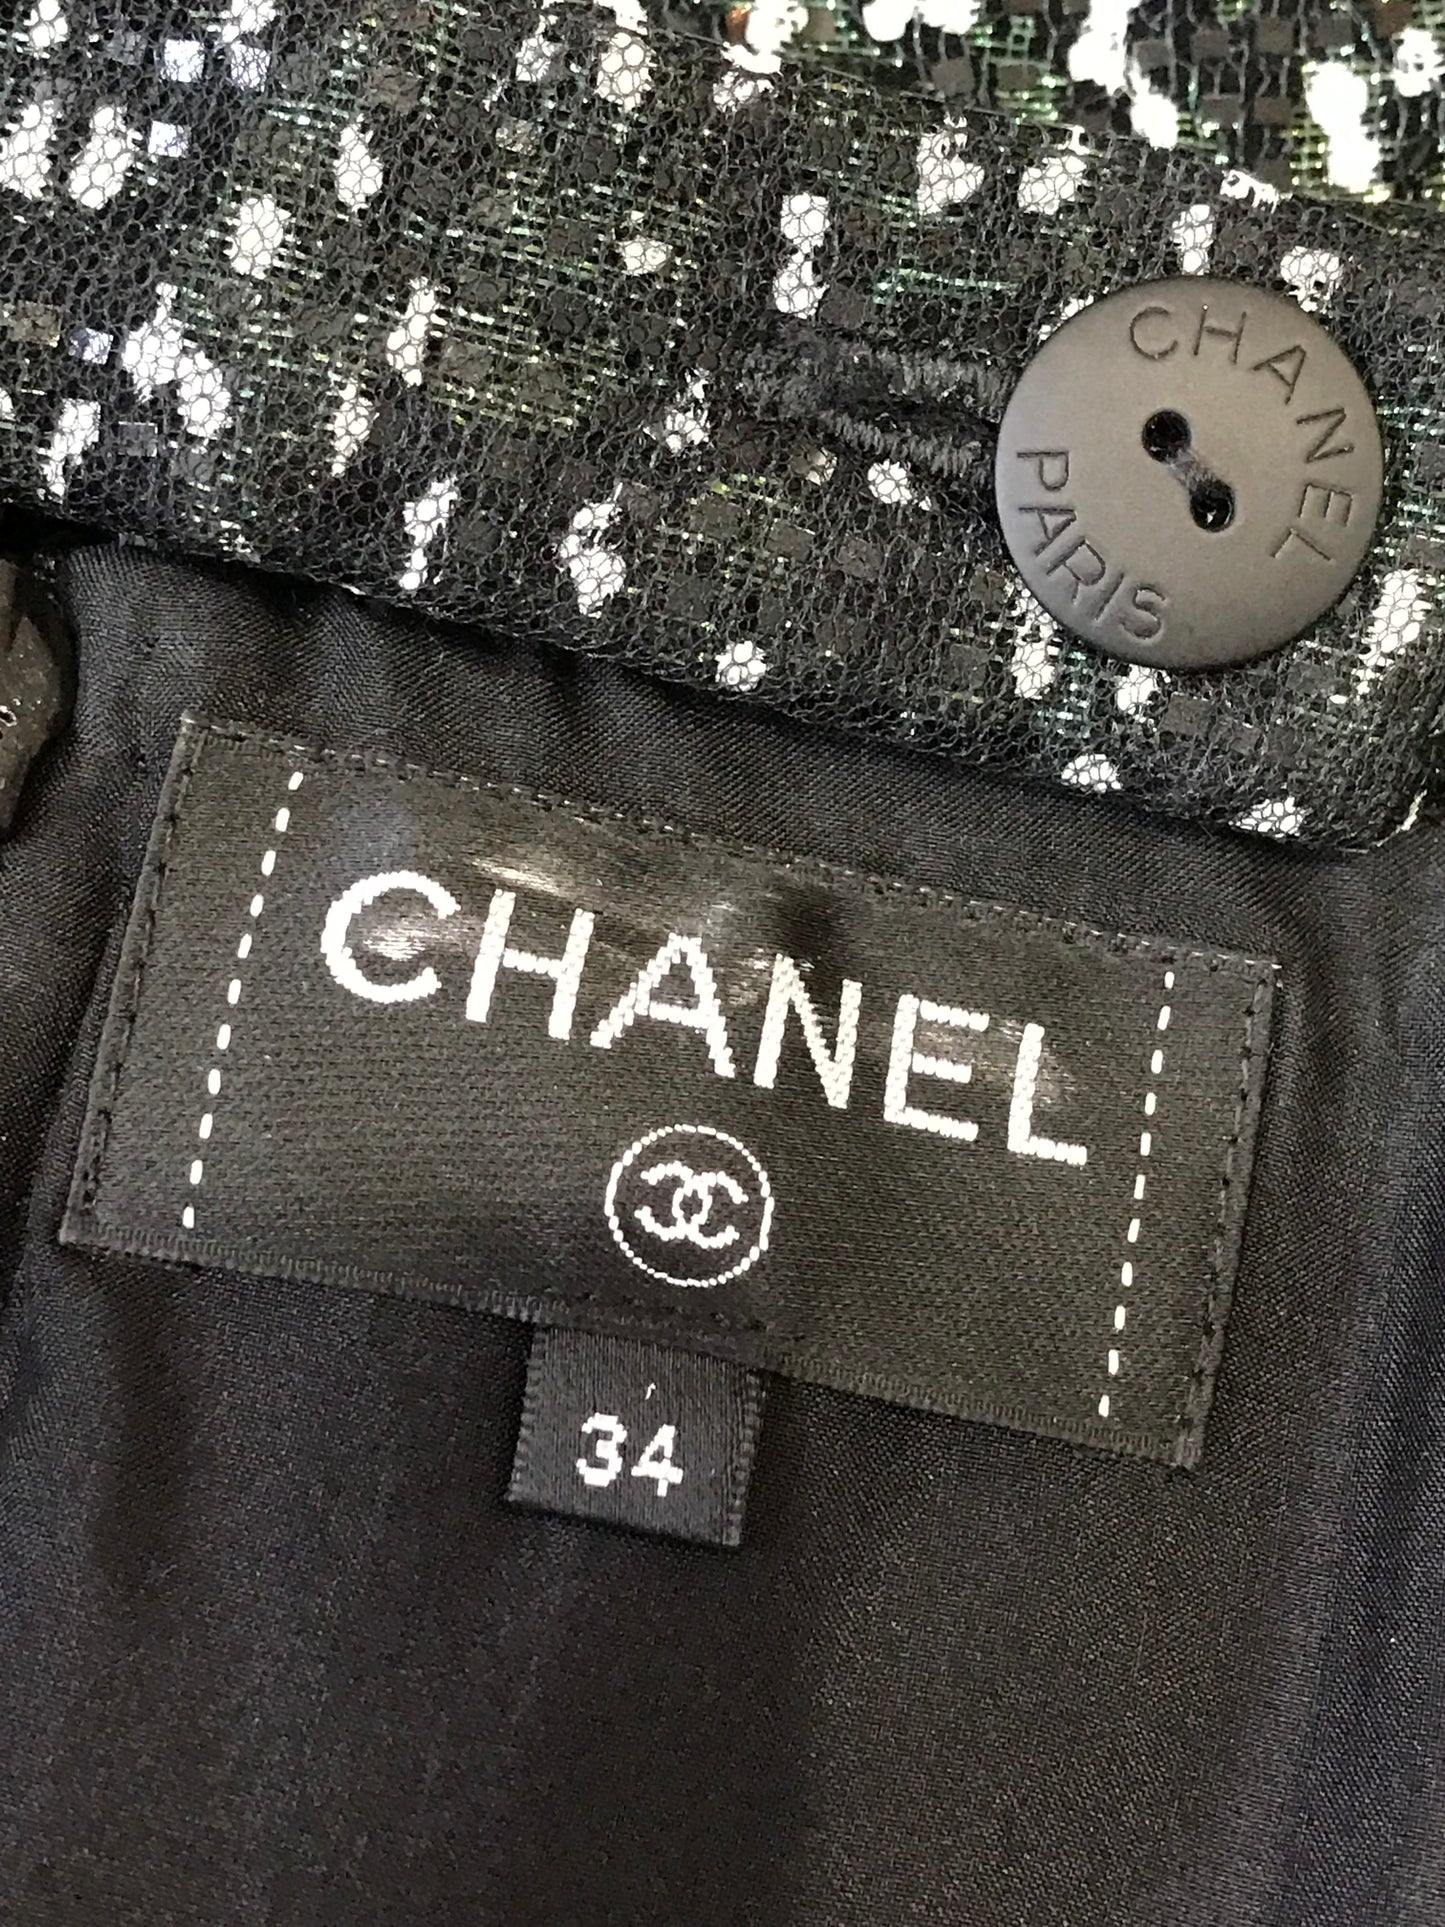 Jupe Chanel noire T.34